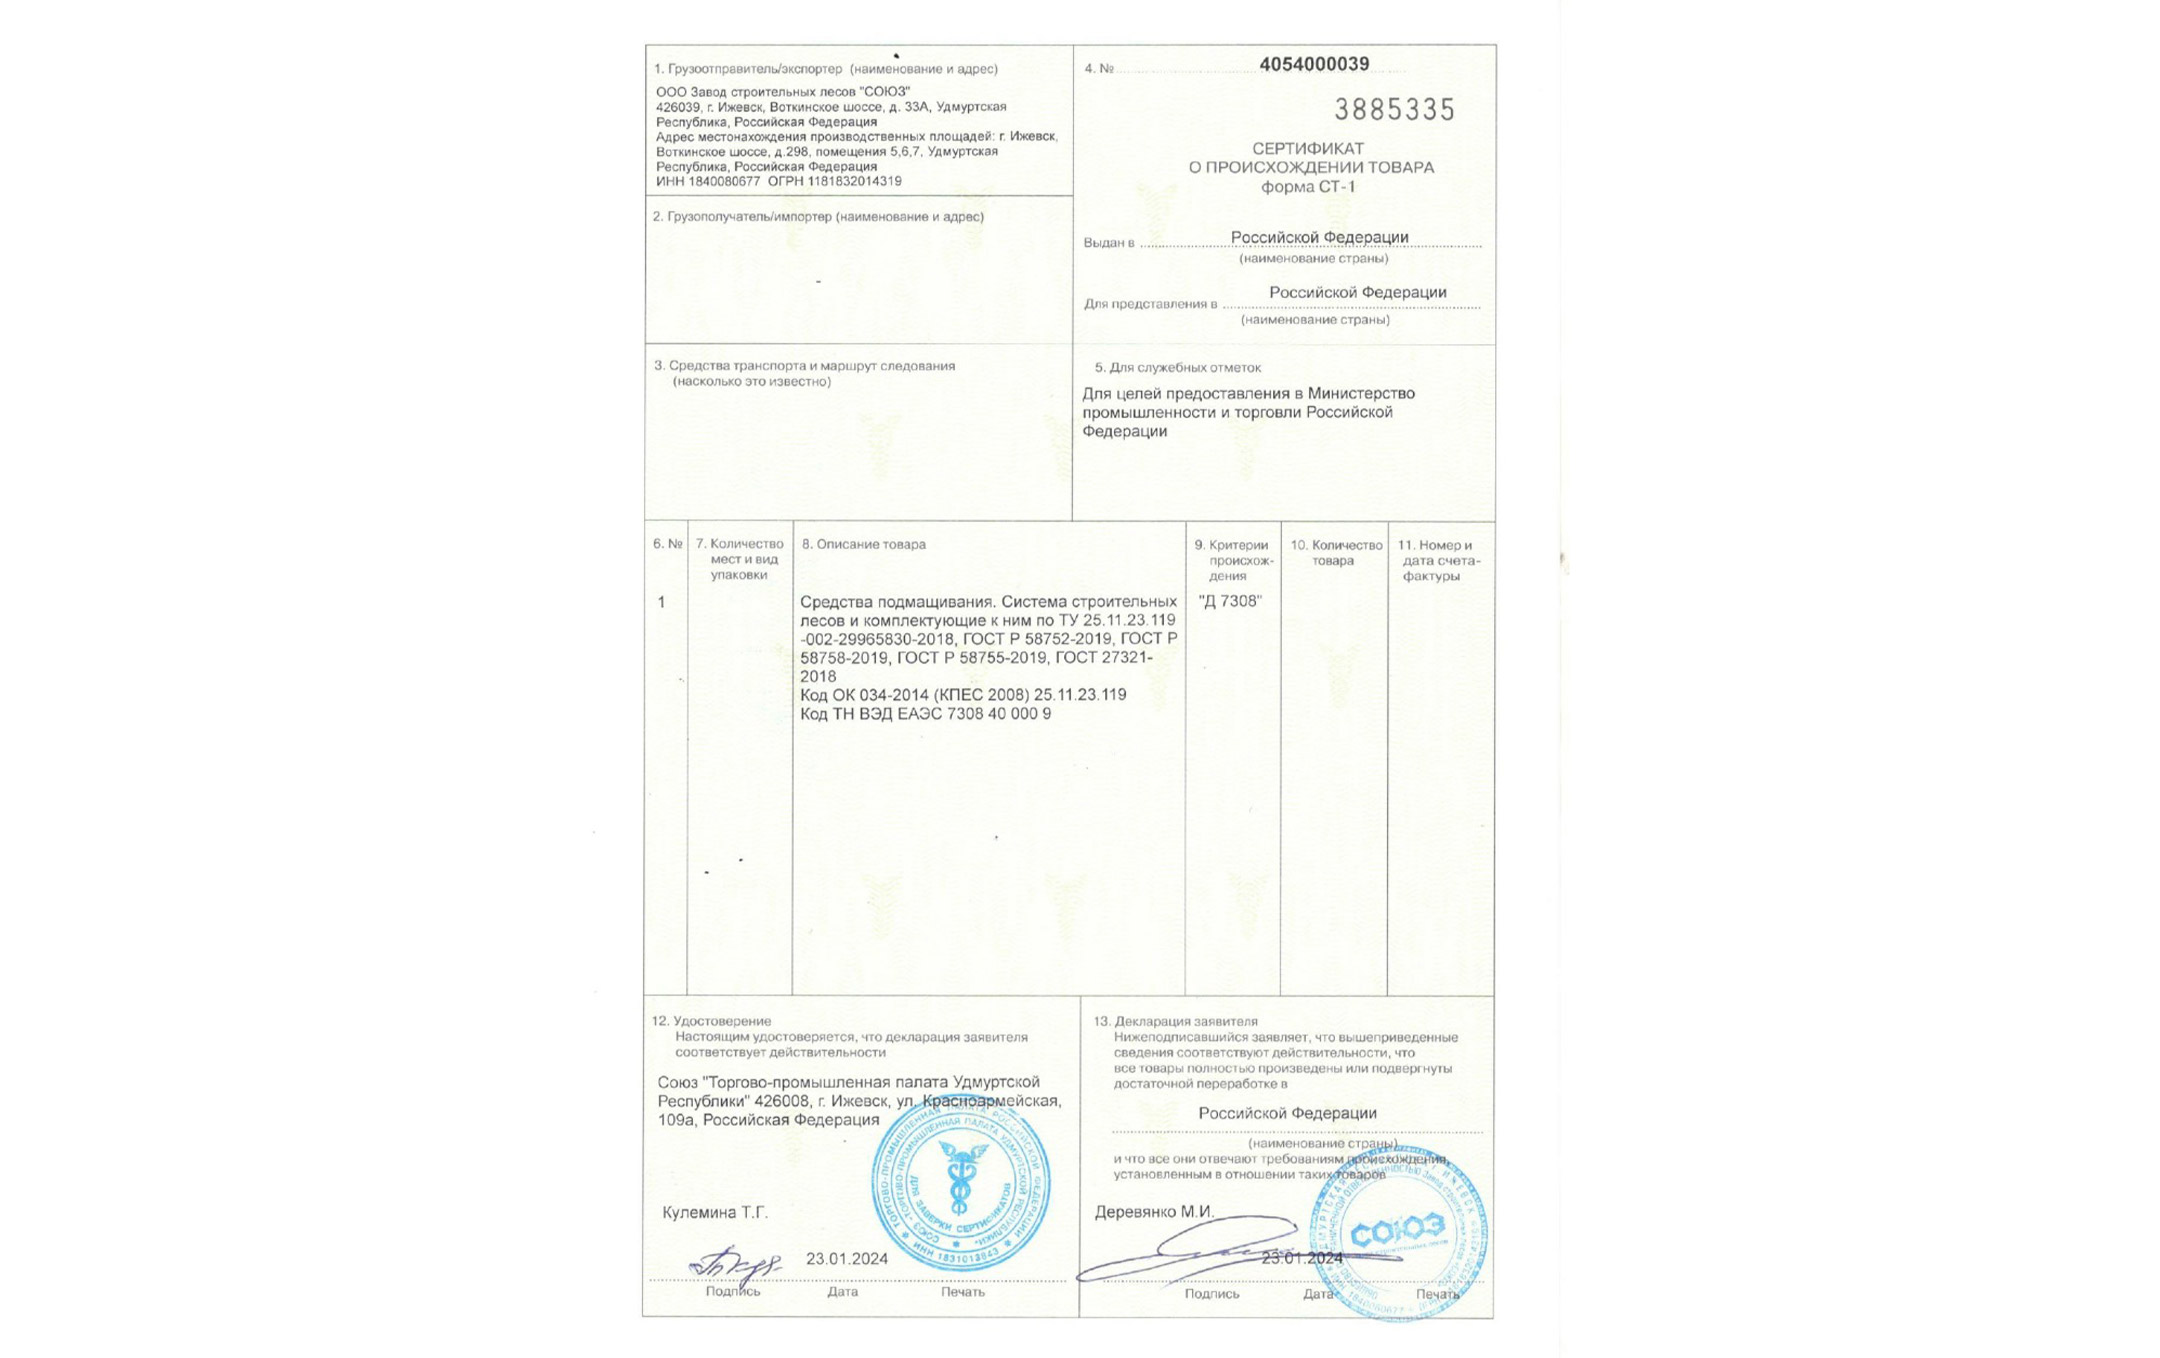 Компания «СОЮЗ» прошла сертификацию по форме СТ-1 и была включена в реестр отечественных производителей Минпромторга РФ